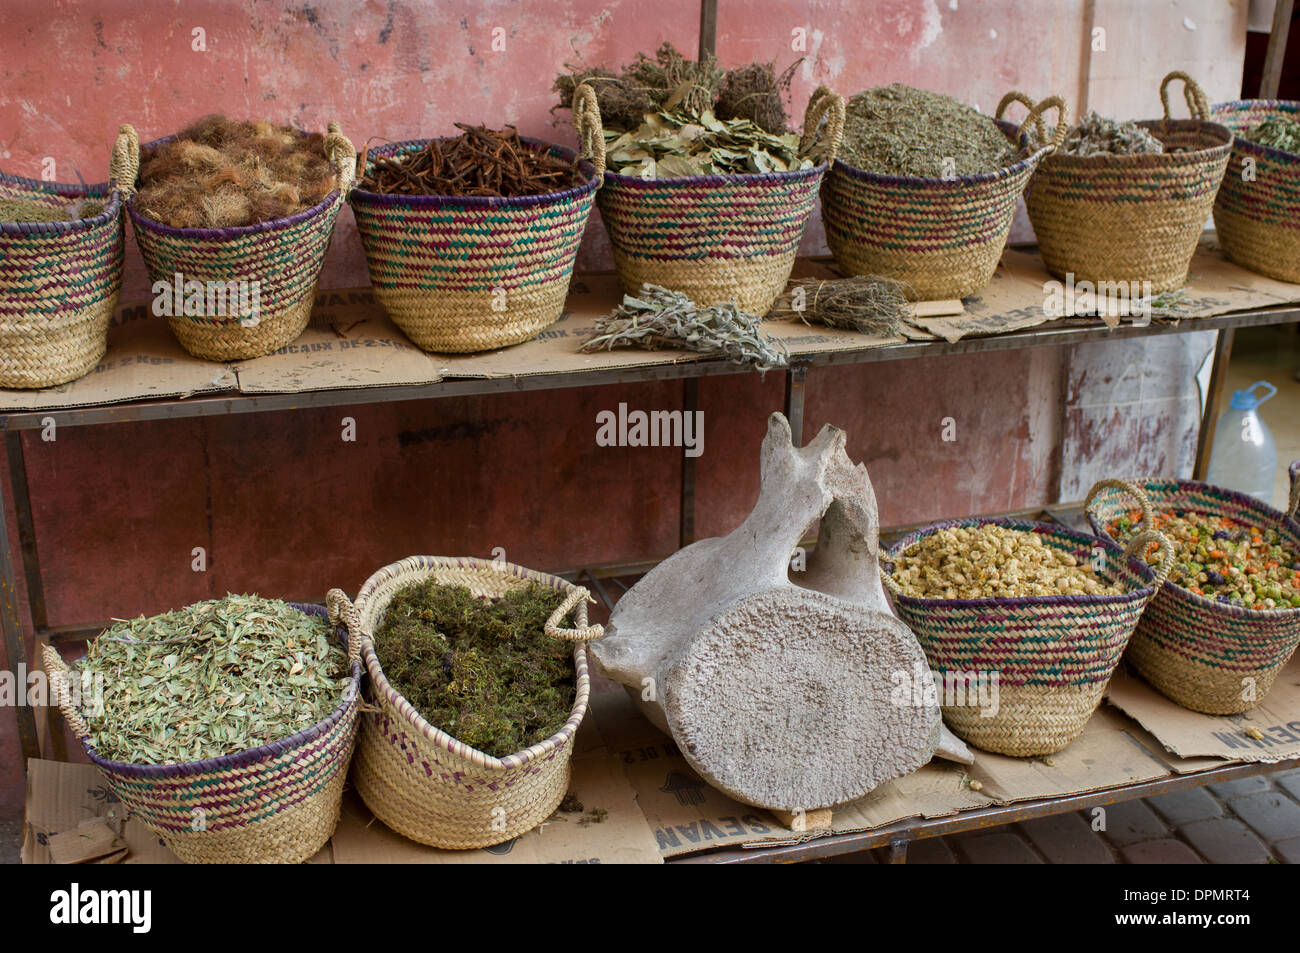 Bancarella vendendo le erbe aromatiche, le spezie e una vertebra di balena nella Medina di Marrakech, Marocco Foto Stock